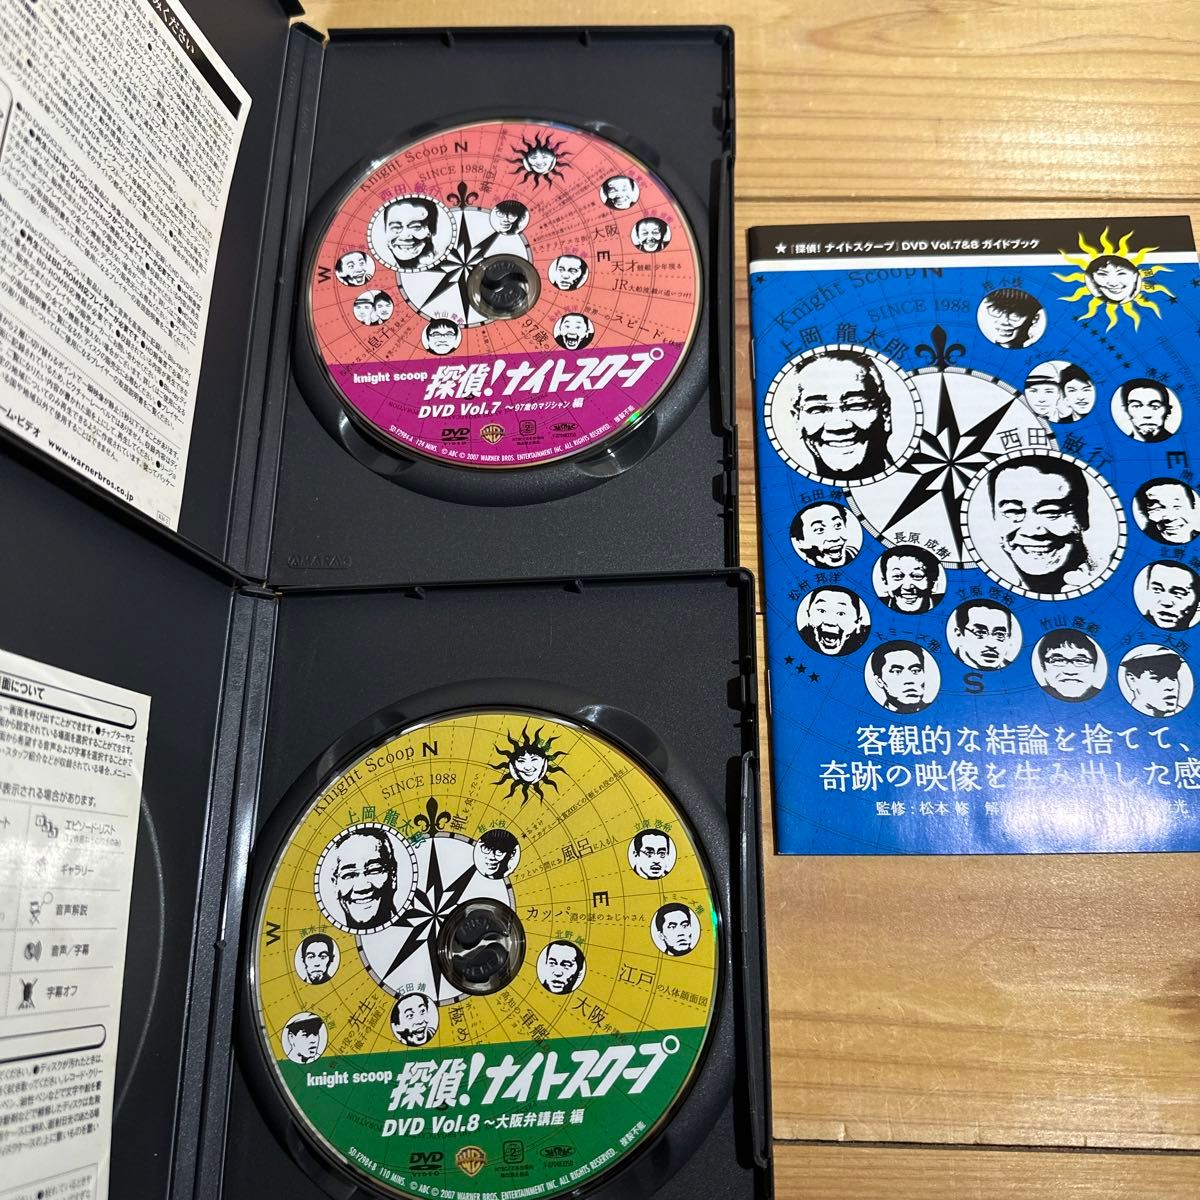 ☆ 探偵!ナイトスクープ DVD BOX 14枚セット☆ 新しい笑いの実験室・上岡龍太郎探偵局 VS 進化する笑いの最前線